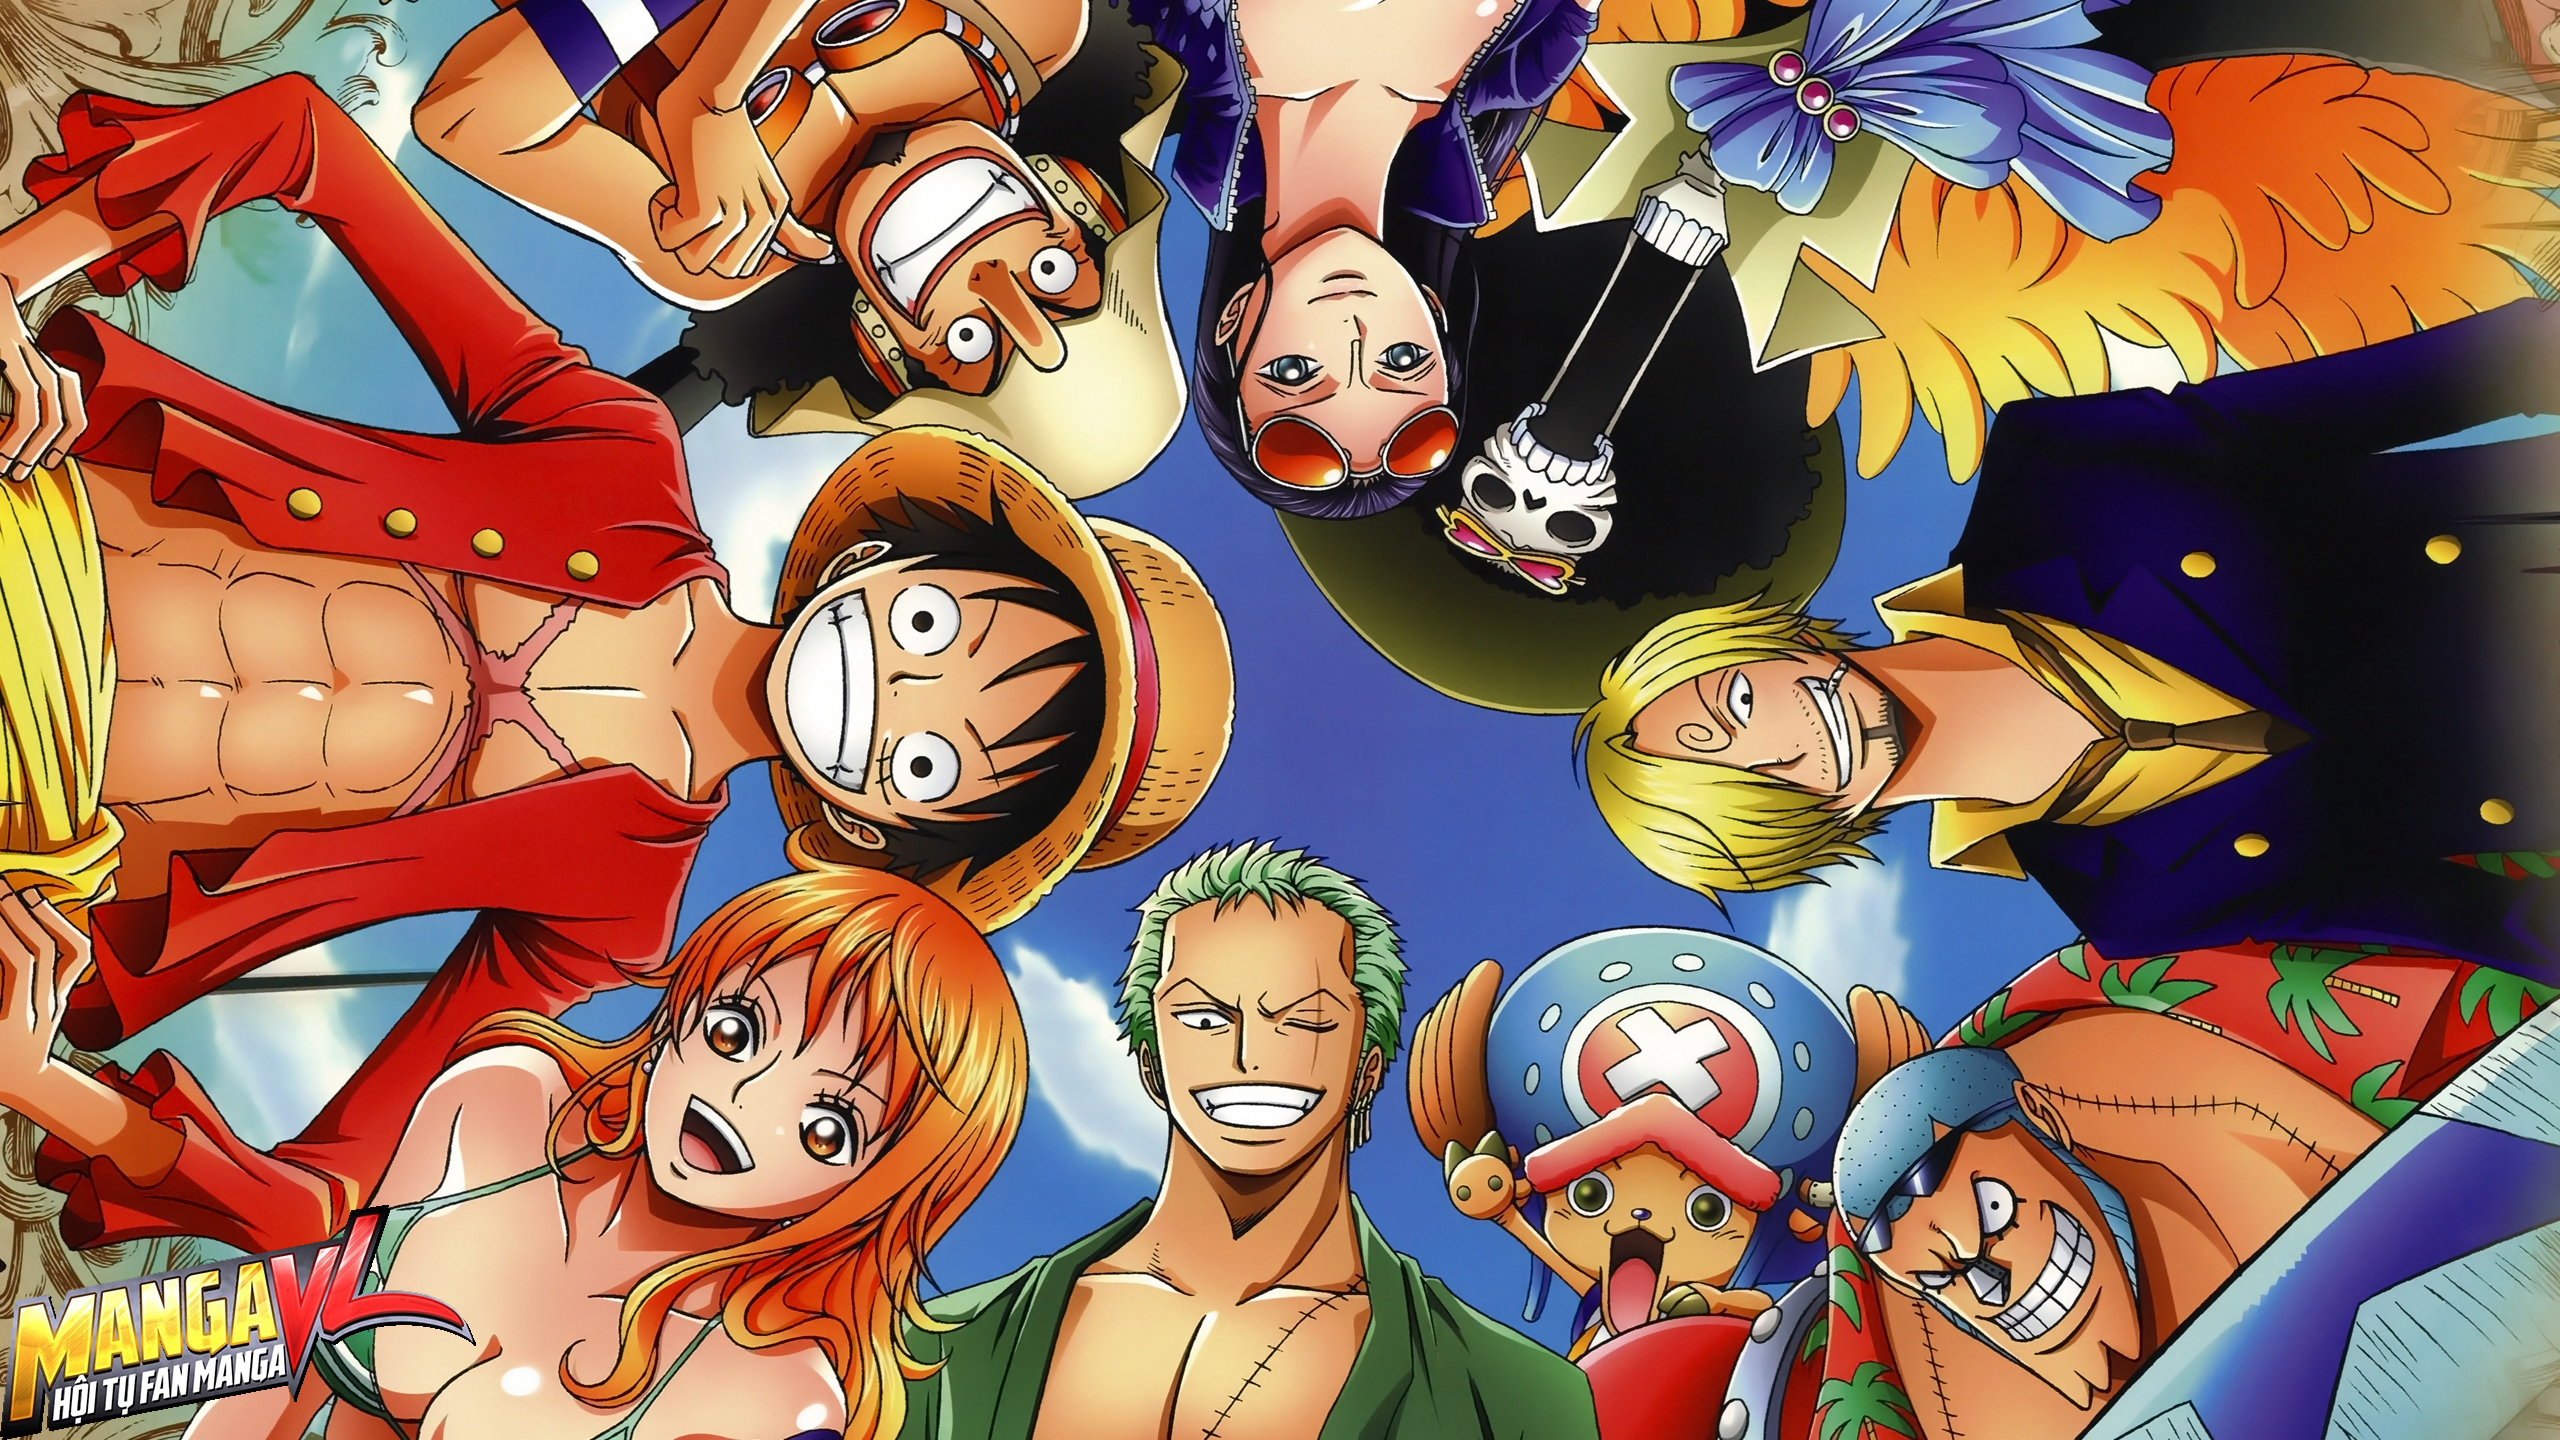 Nhân vật nữ One Piece: Bạn sẽ không thể bỏ qua những hình ảnh đầy sức hút của những nhân vật nữ trên con tàu Thousand Sunny, từ Nami đến Robin hay cô công chúa tóc mây - Shirahoshi. Hãy đến ngay để chiêm ngưỡng những cô gái đầy năng lượng và sự quyến rũ này nhé.